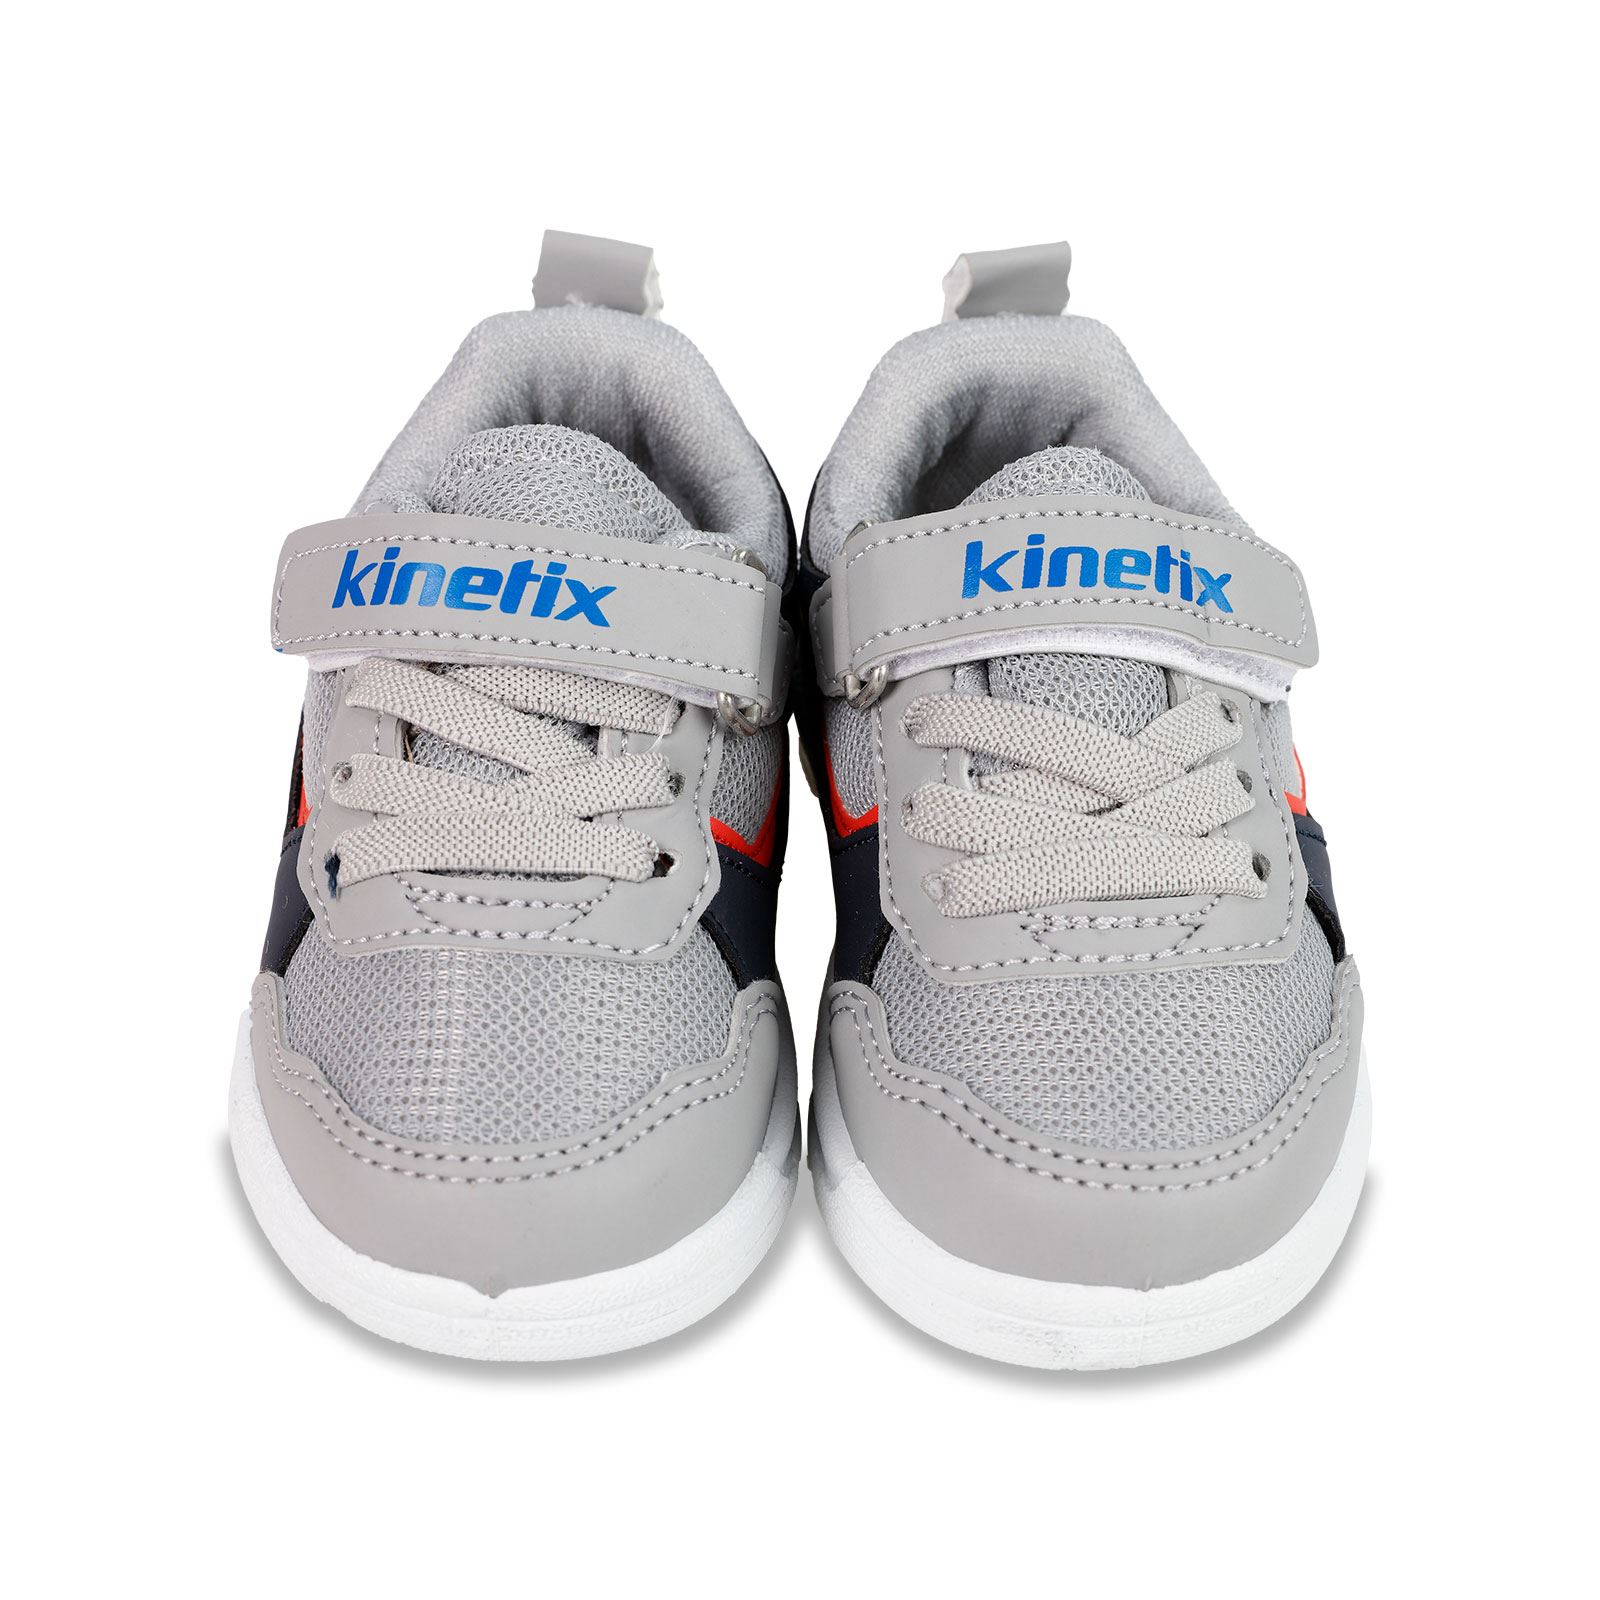 Kinetix Erkek Çocuk Spor Ayakkabı 21-25 Numara Gri